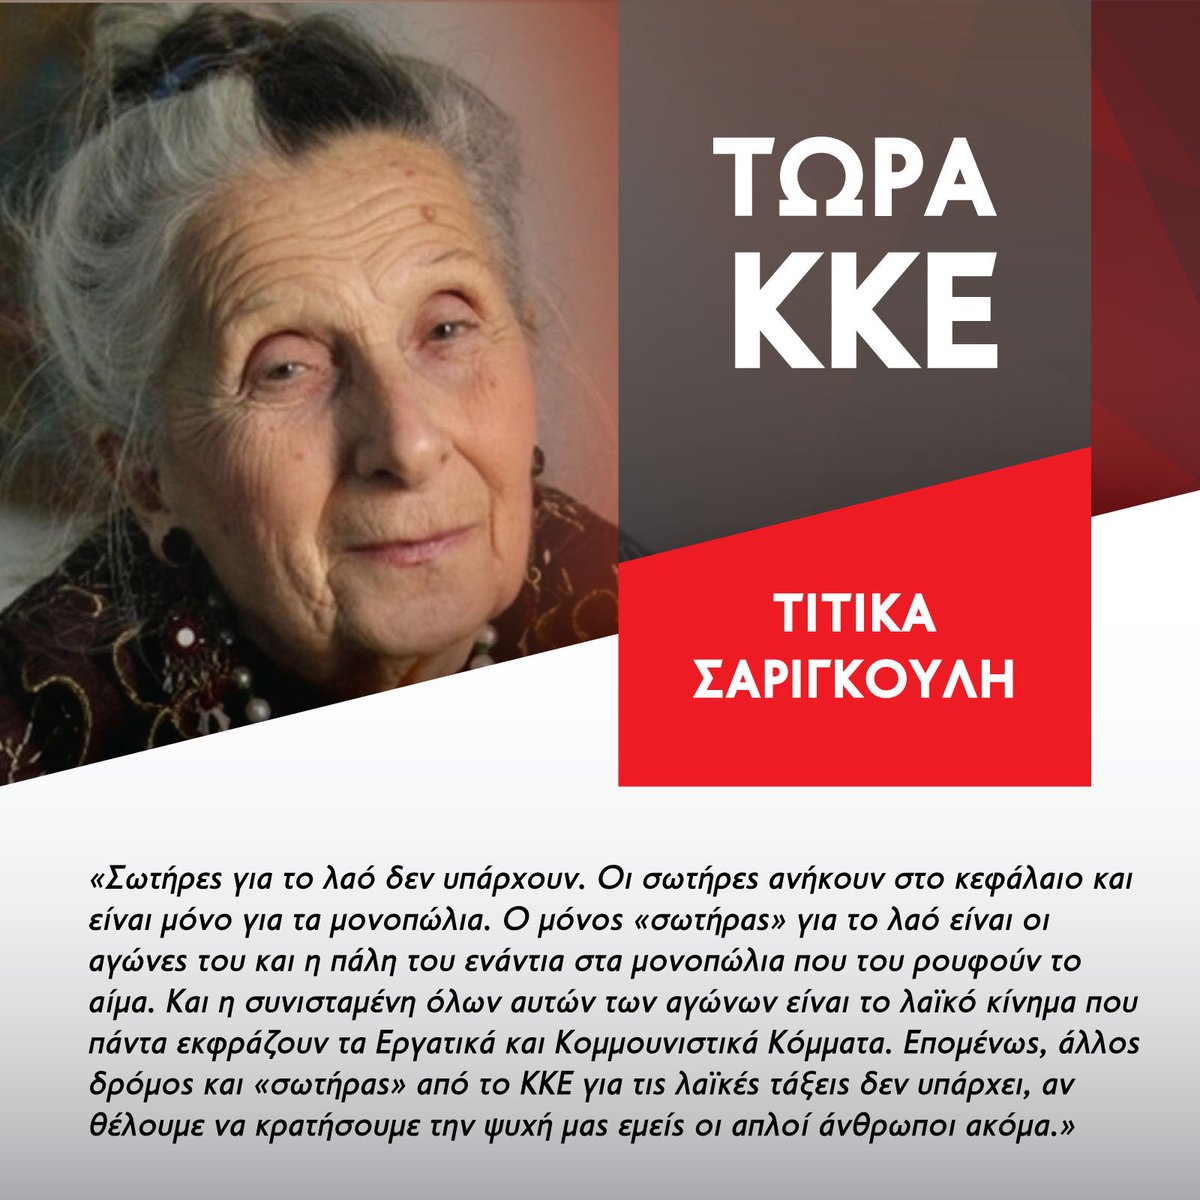 Τιτίκα Σαριγκούλη: Άλλος δρόμος κ «σωτήρας» από το ΚΚΕ για τις λαϊκές τάξεις δεν υπάρχει, αν θέλουμε να κρατήσουμε την ψυχή μας εμείς οι απλοί άνθρωποι ακόμα... #ΤΩΡΑ_ΚΚΕ #ekloges2019 #8iouliou